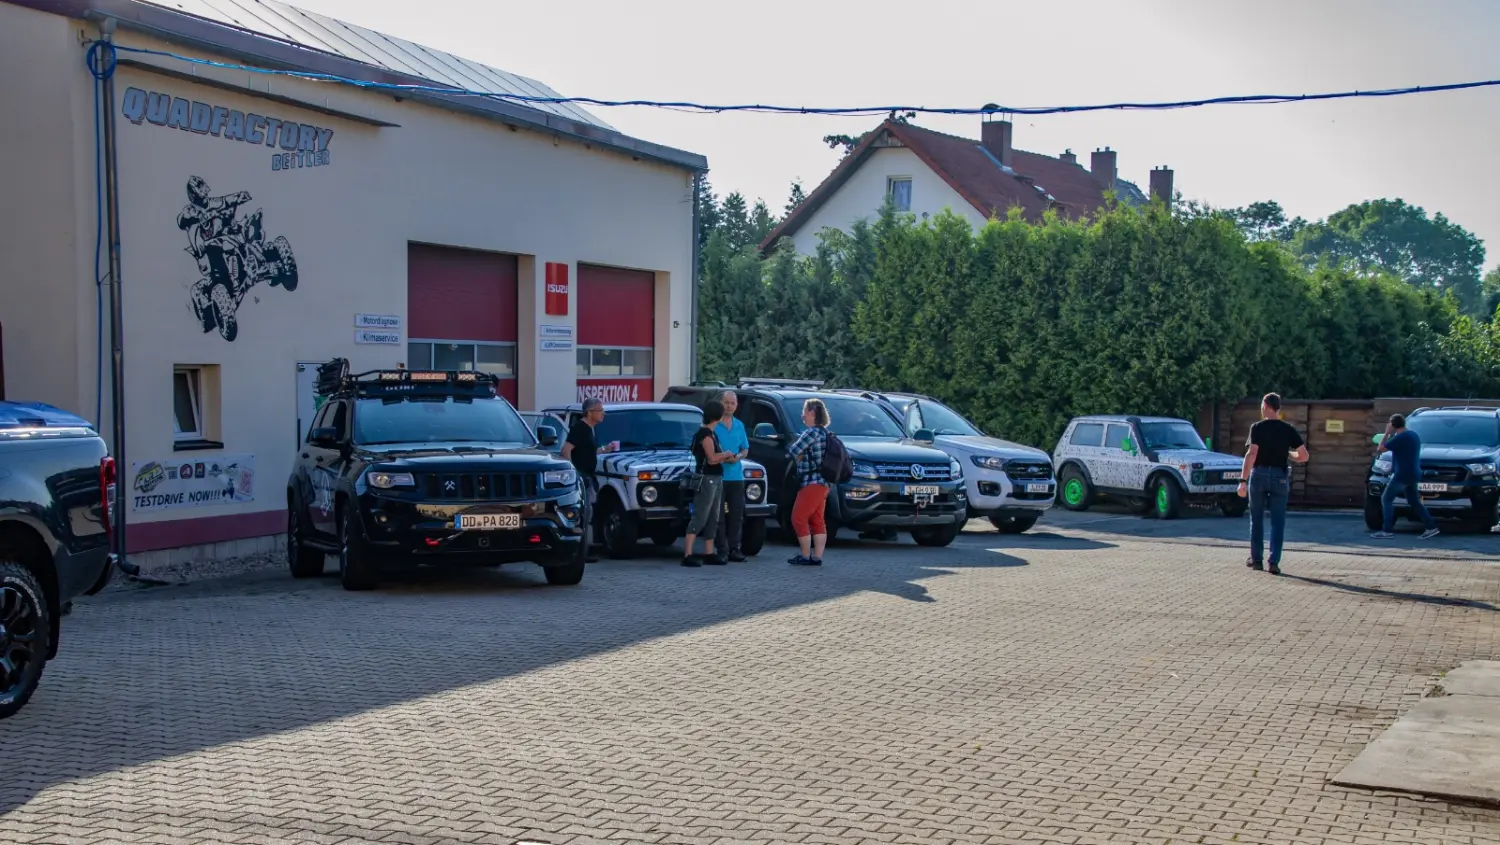 Quadfactory Beitler, Fahrzeuge vor der Werkstatt geparkt